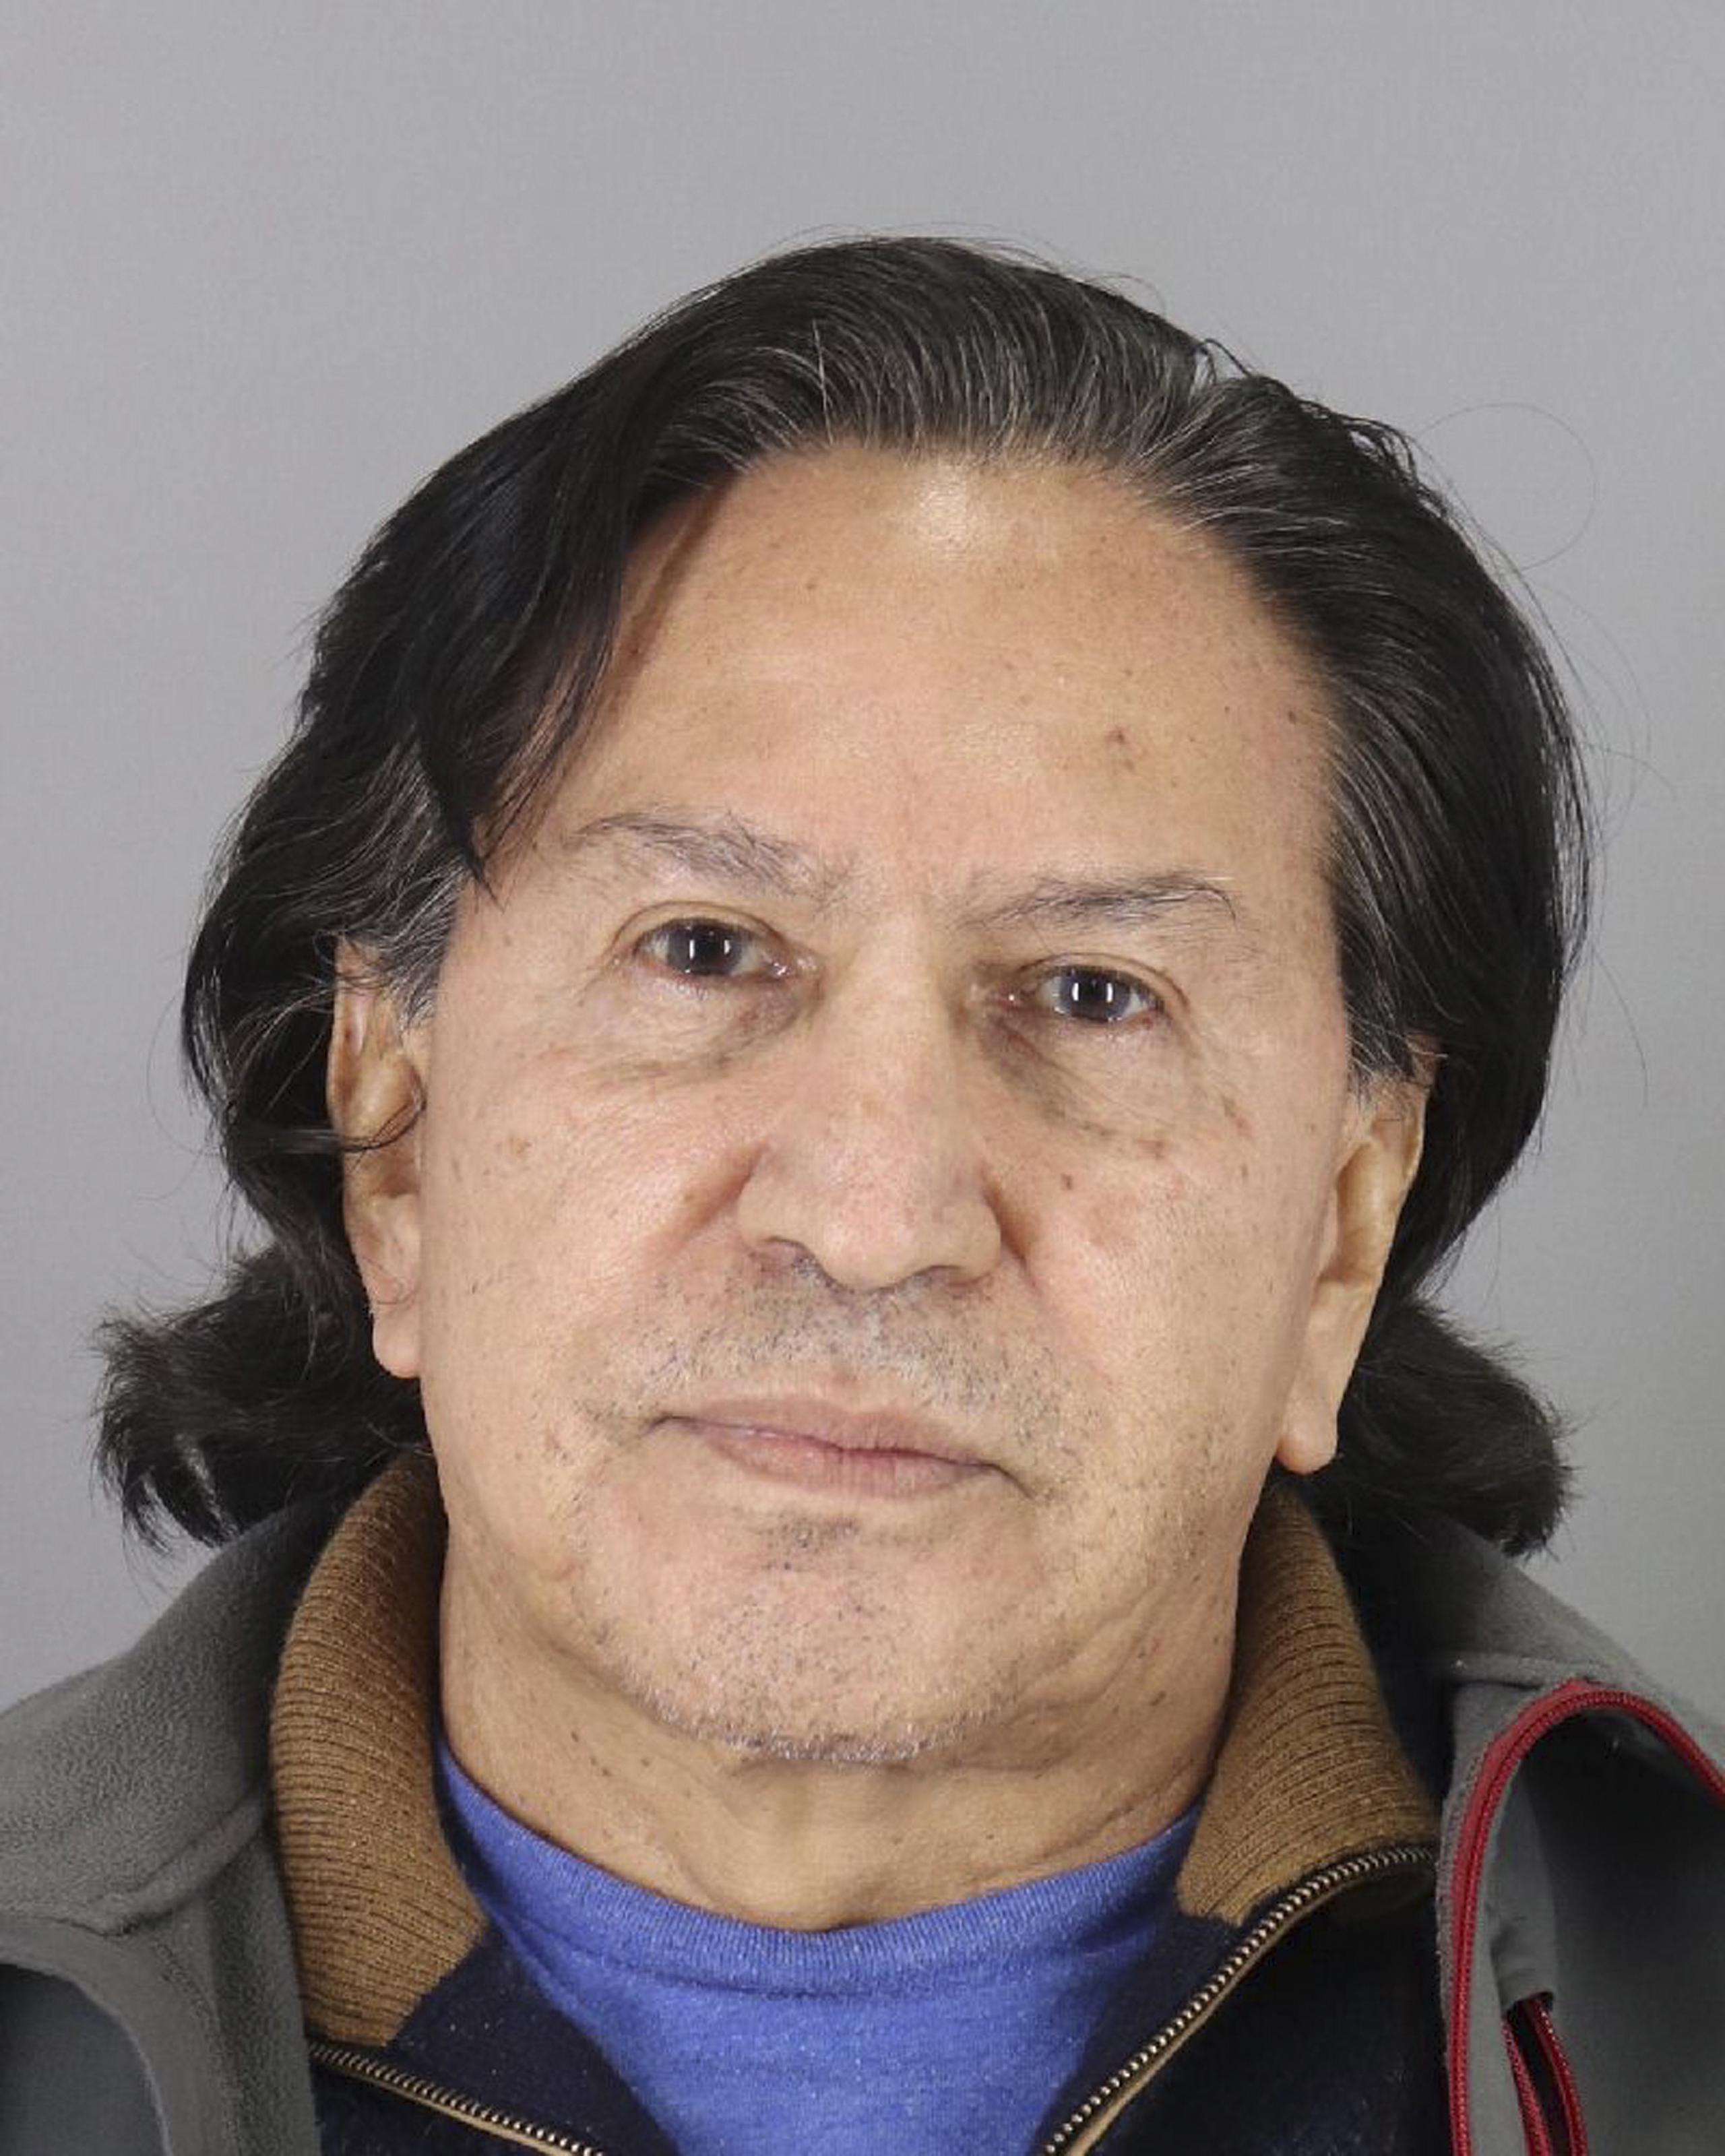 Toledo fue detenido en Estados Unidos en 2019, pero cumple libertad condicional después de haber pagado una fianza.